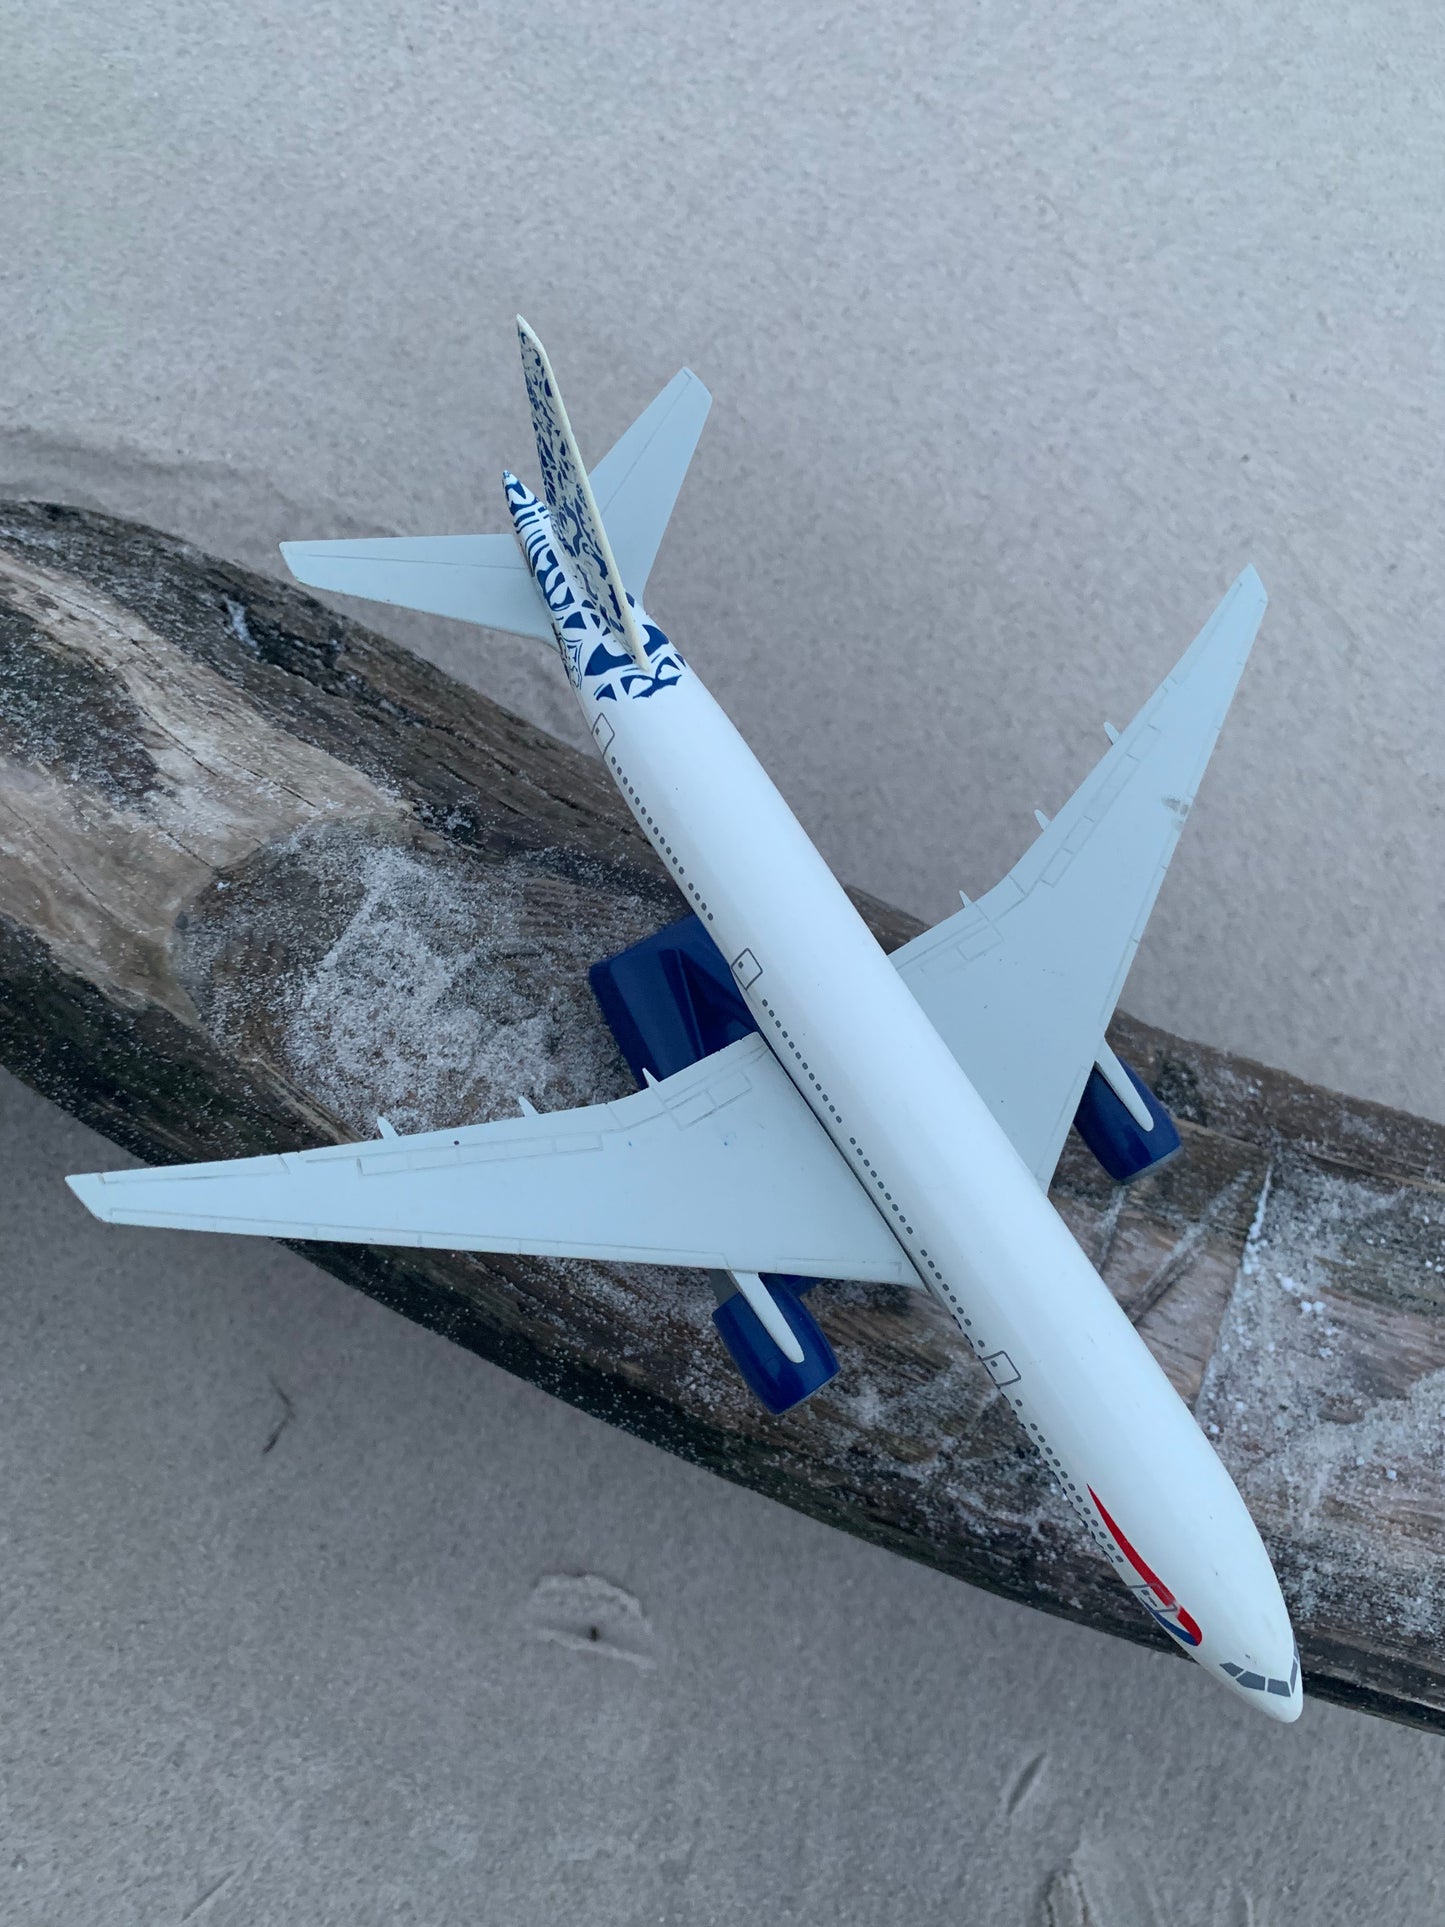 Modellflygplan - British Airways